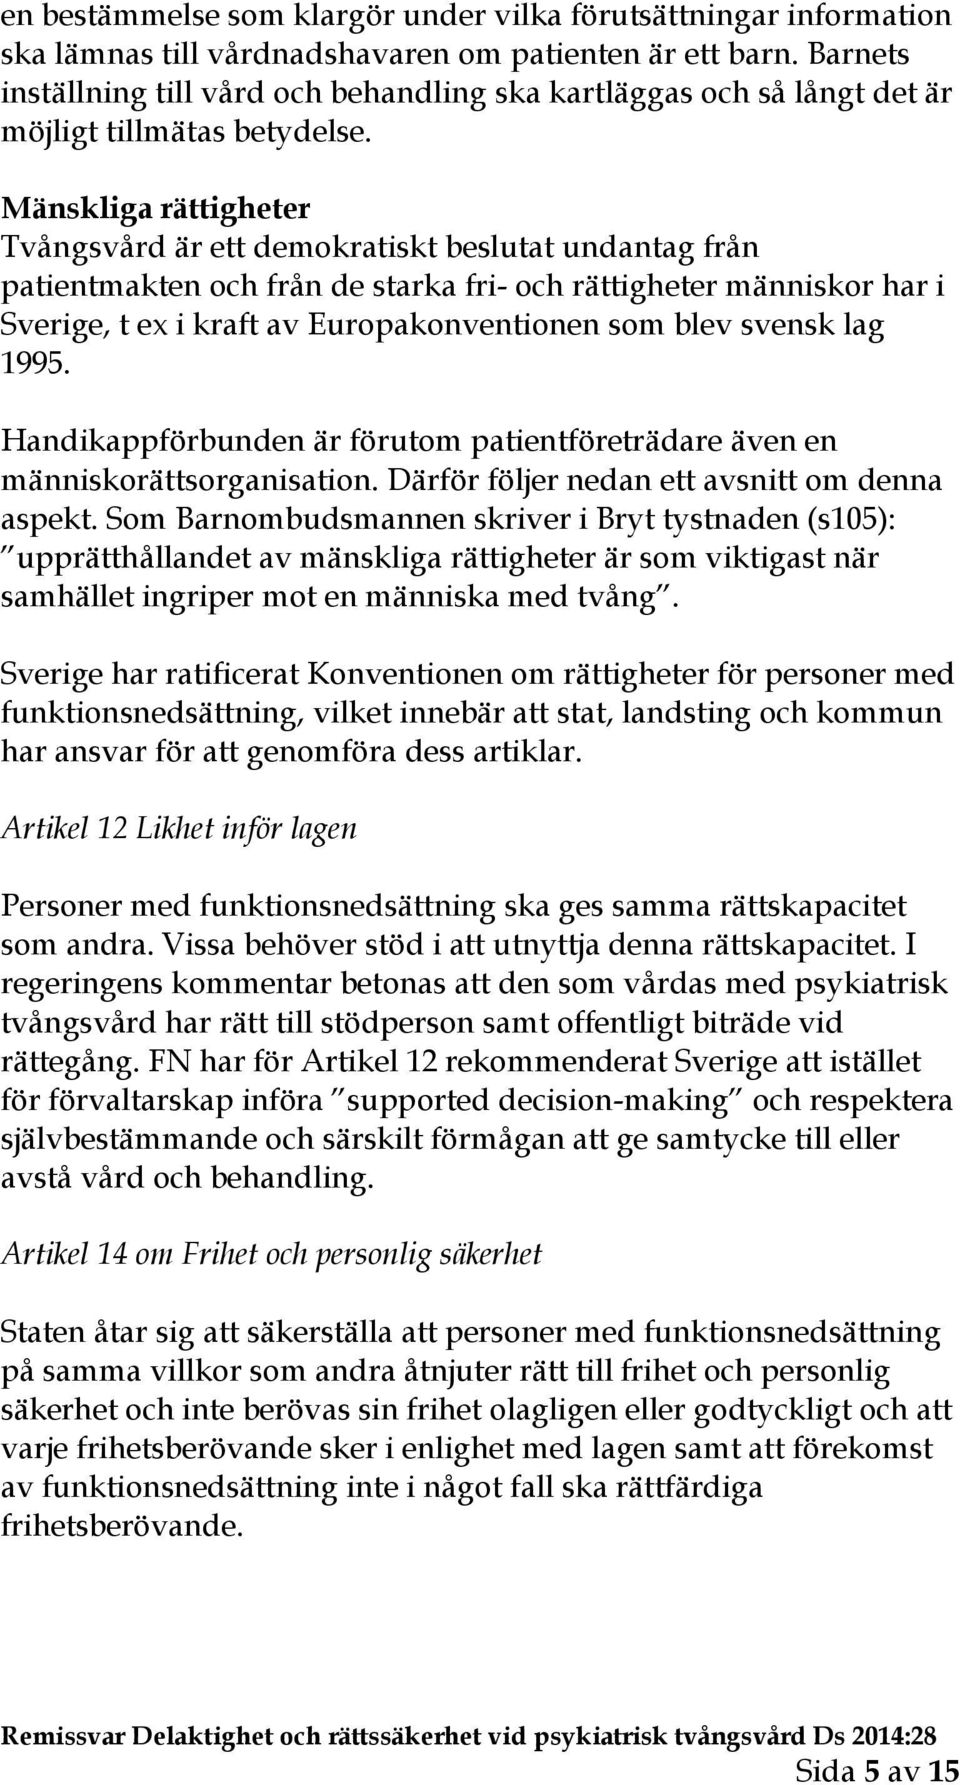 Mänskliga rättigheter Tvångsvård är ett demokratiskt beslutat undantag från patientmakten och från de starka fri- och rättigheter människor har i Sverige, t ex i kraft av Europakonventionen som blev